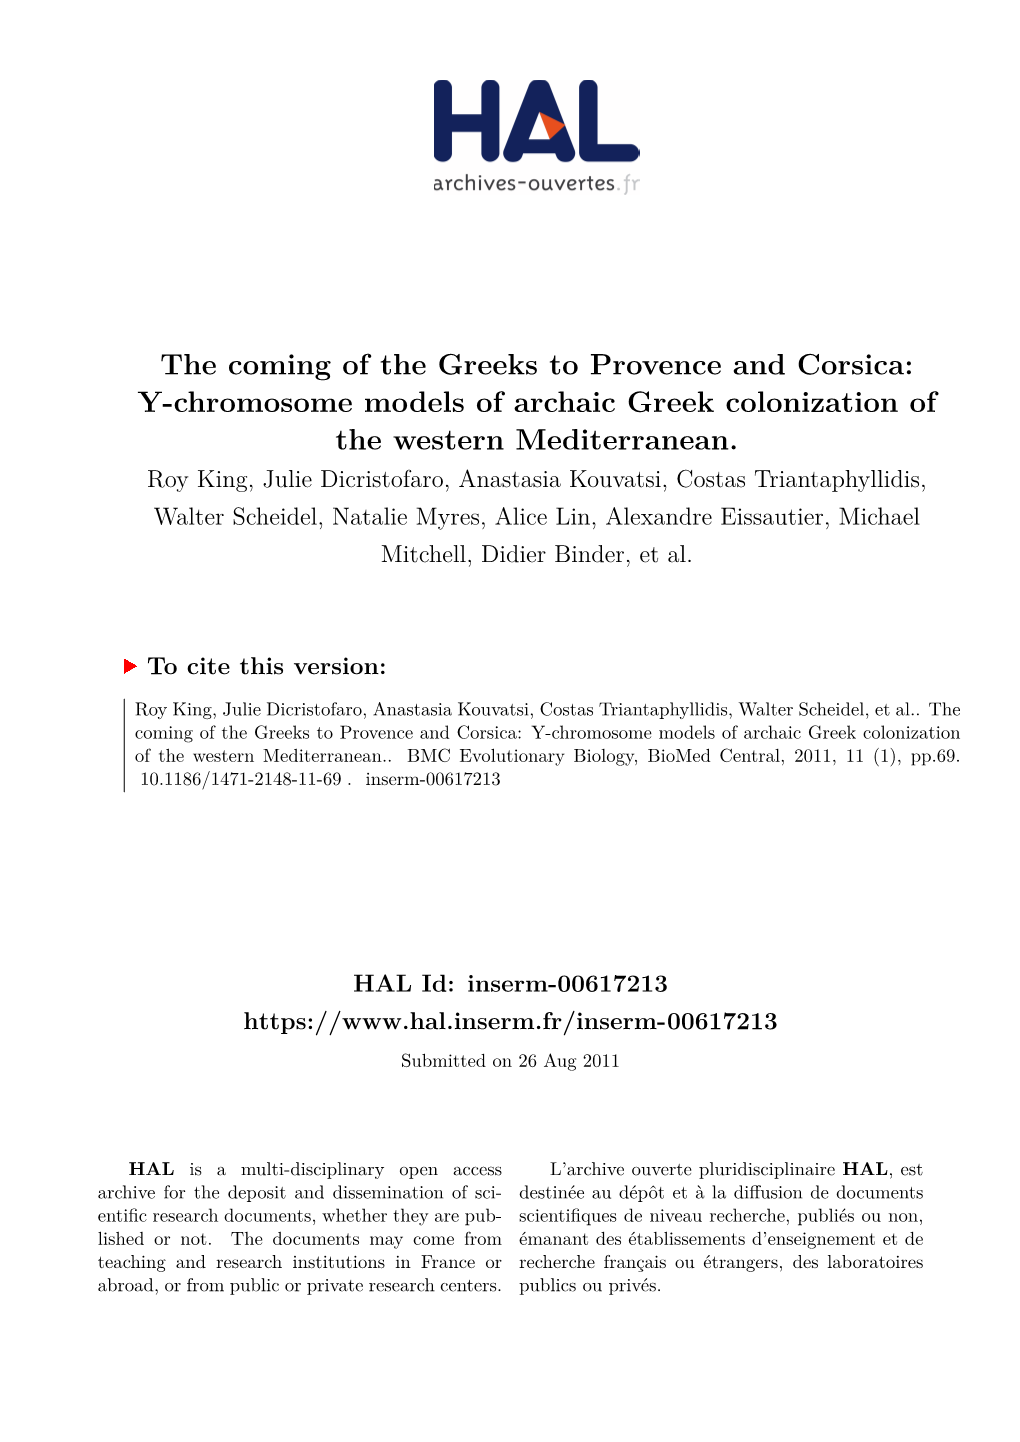 Y-Chromosome Models of Archaic Greek Colonization of the Western Mediterranean